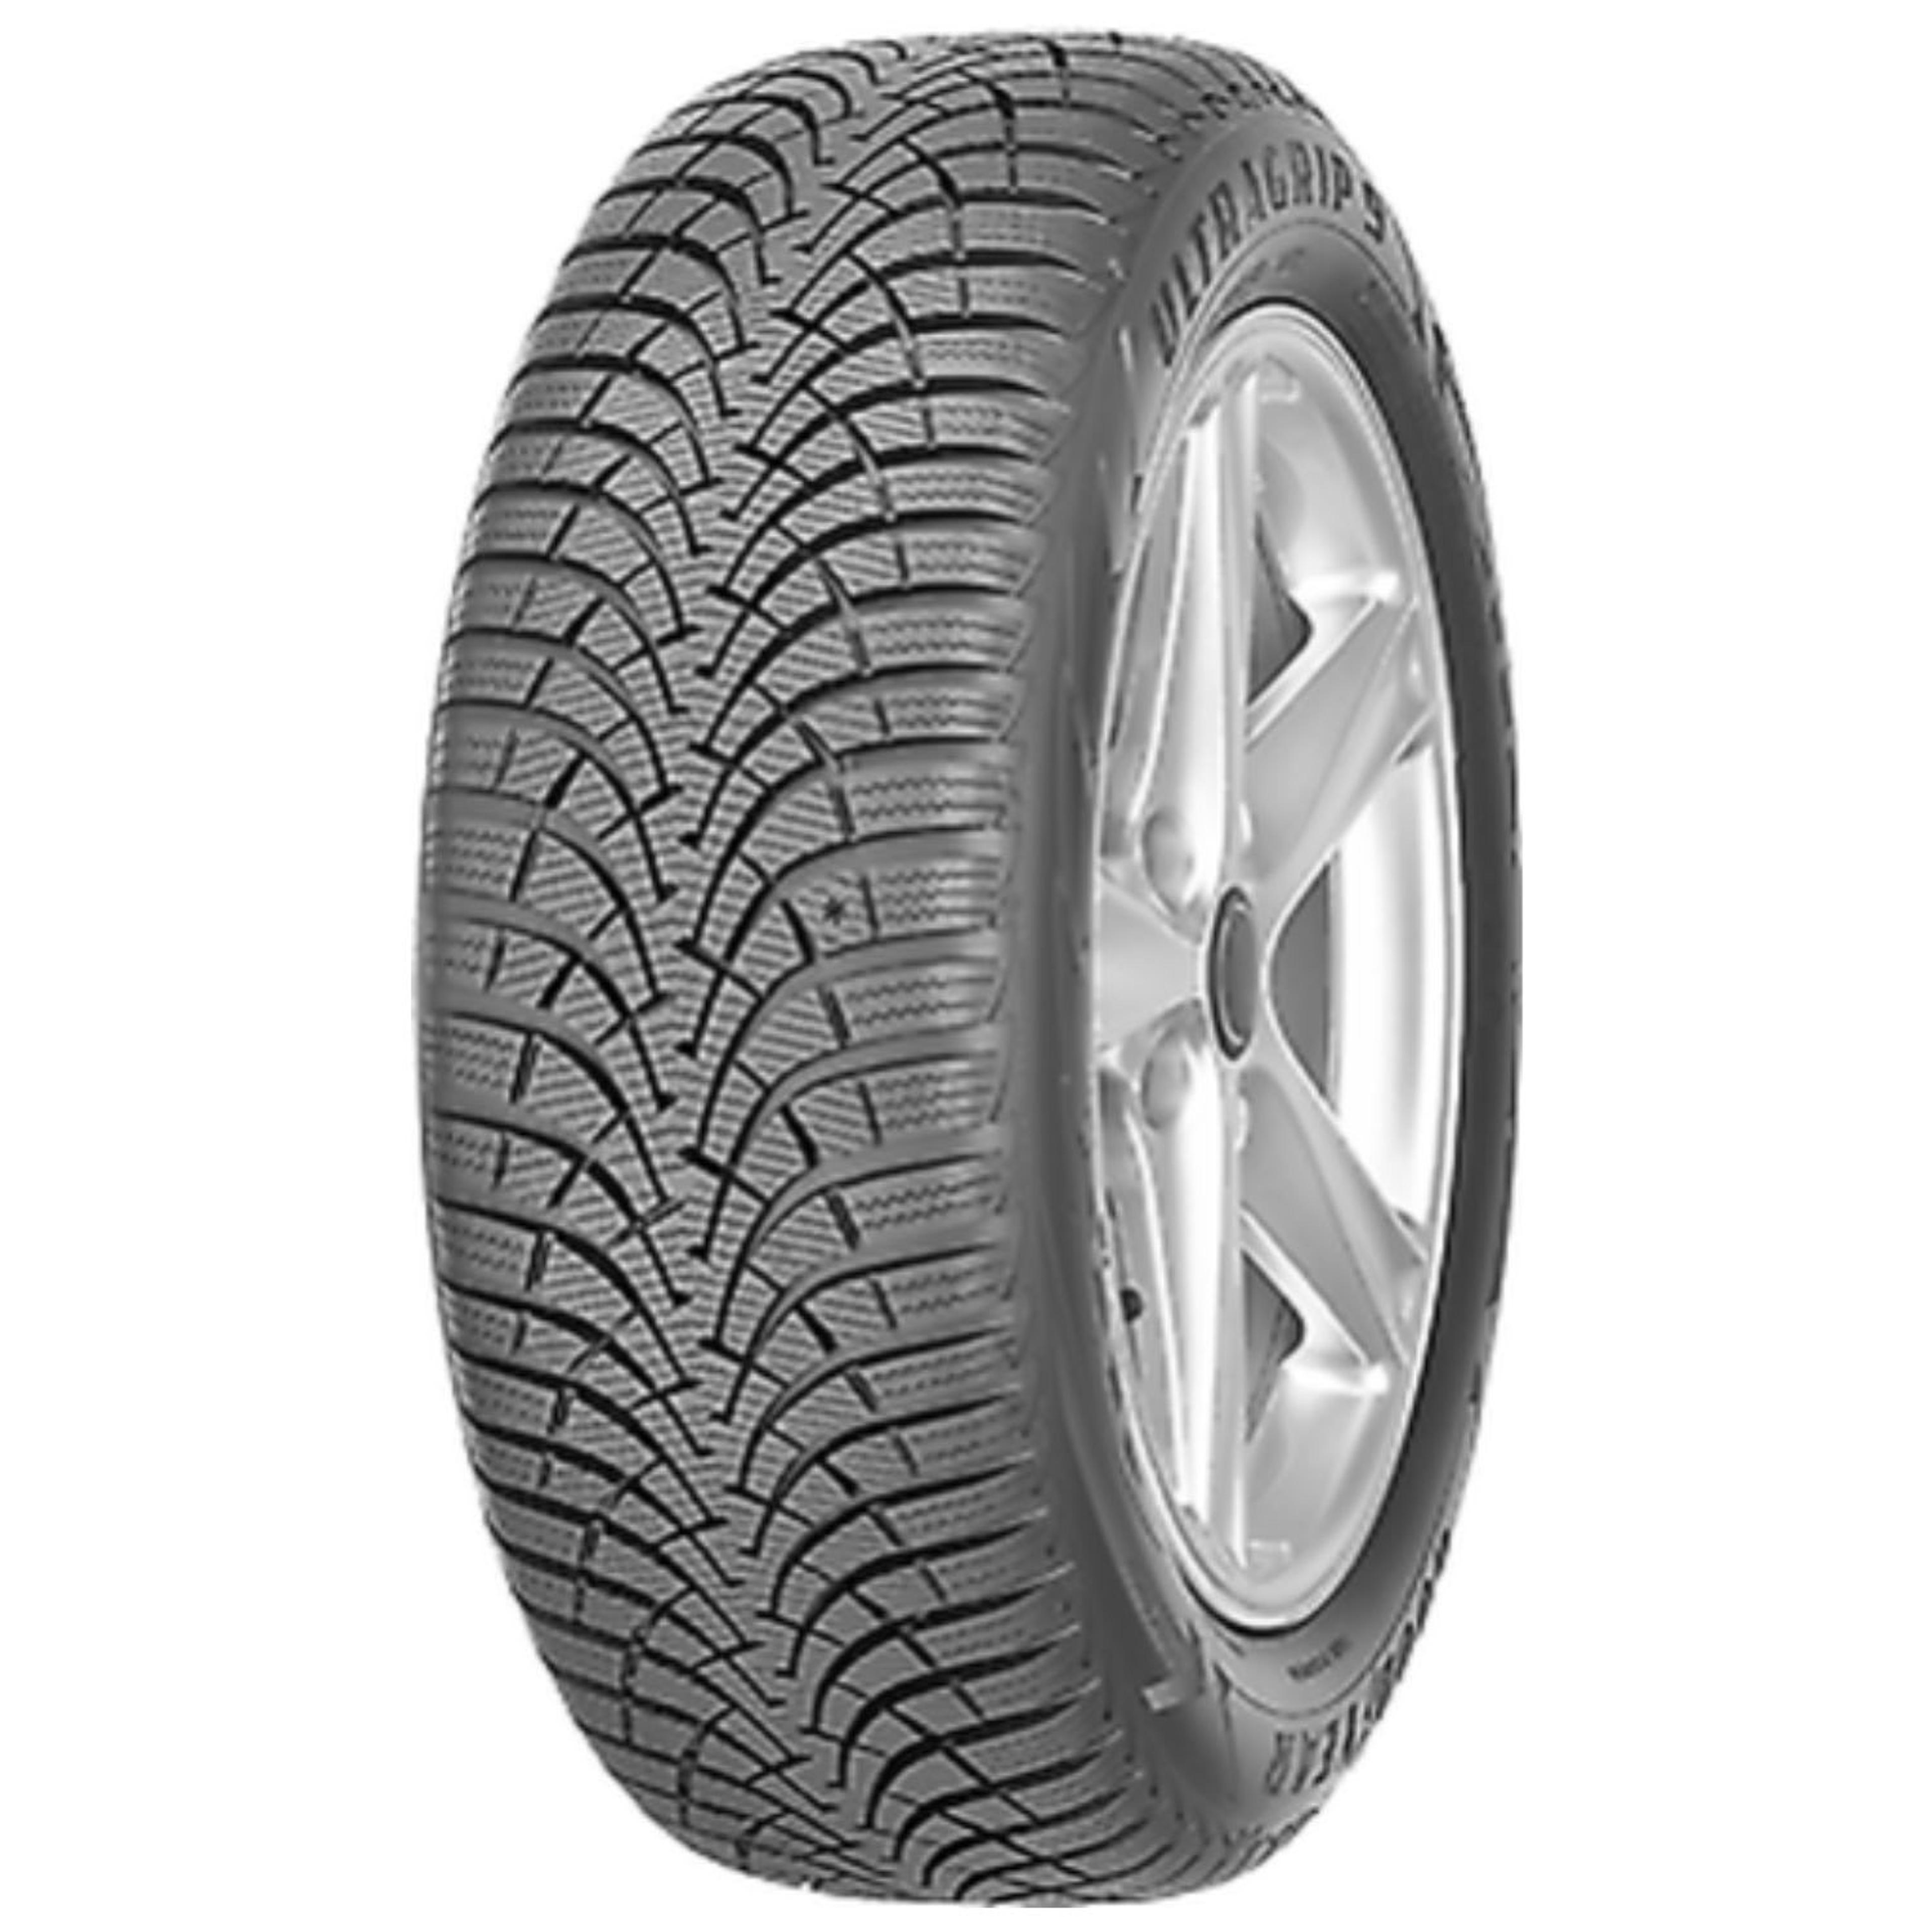 Buy Goodyear Ultra Grip 9 Plus 195/65R15 Tires | SimpleTire